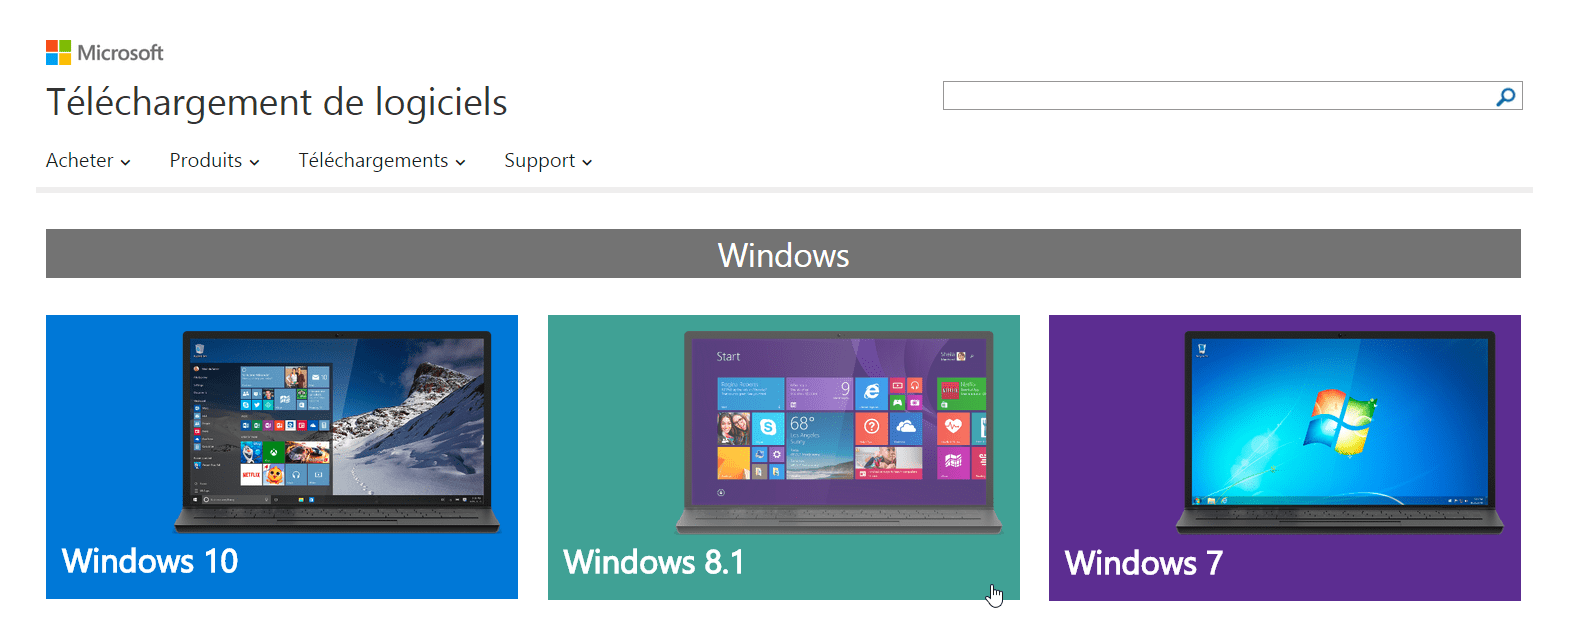 Telecharger Gratuit Windows 7 Iso